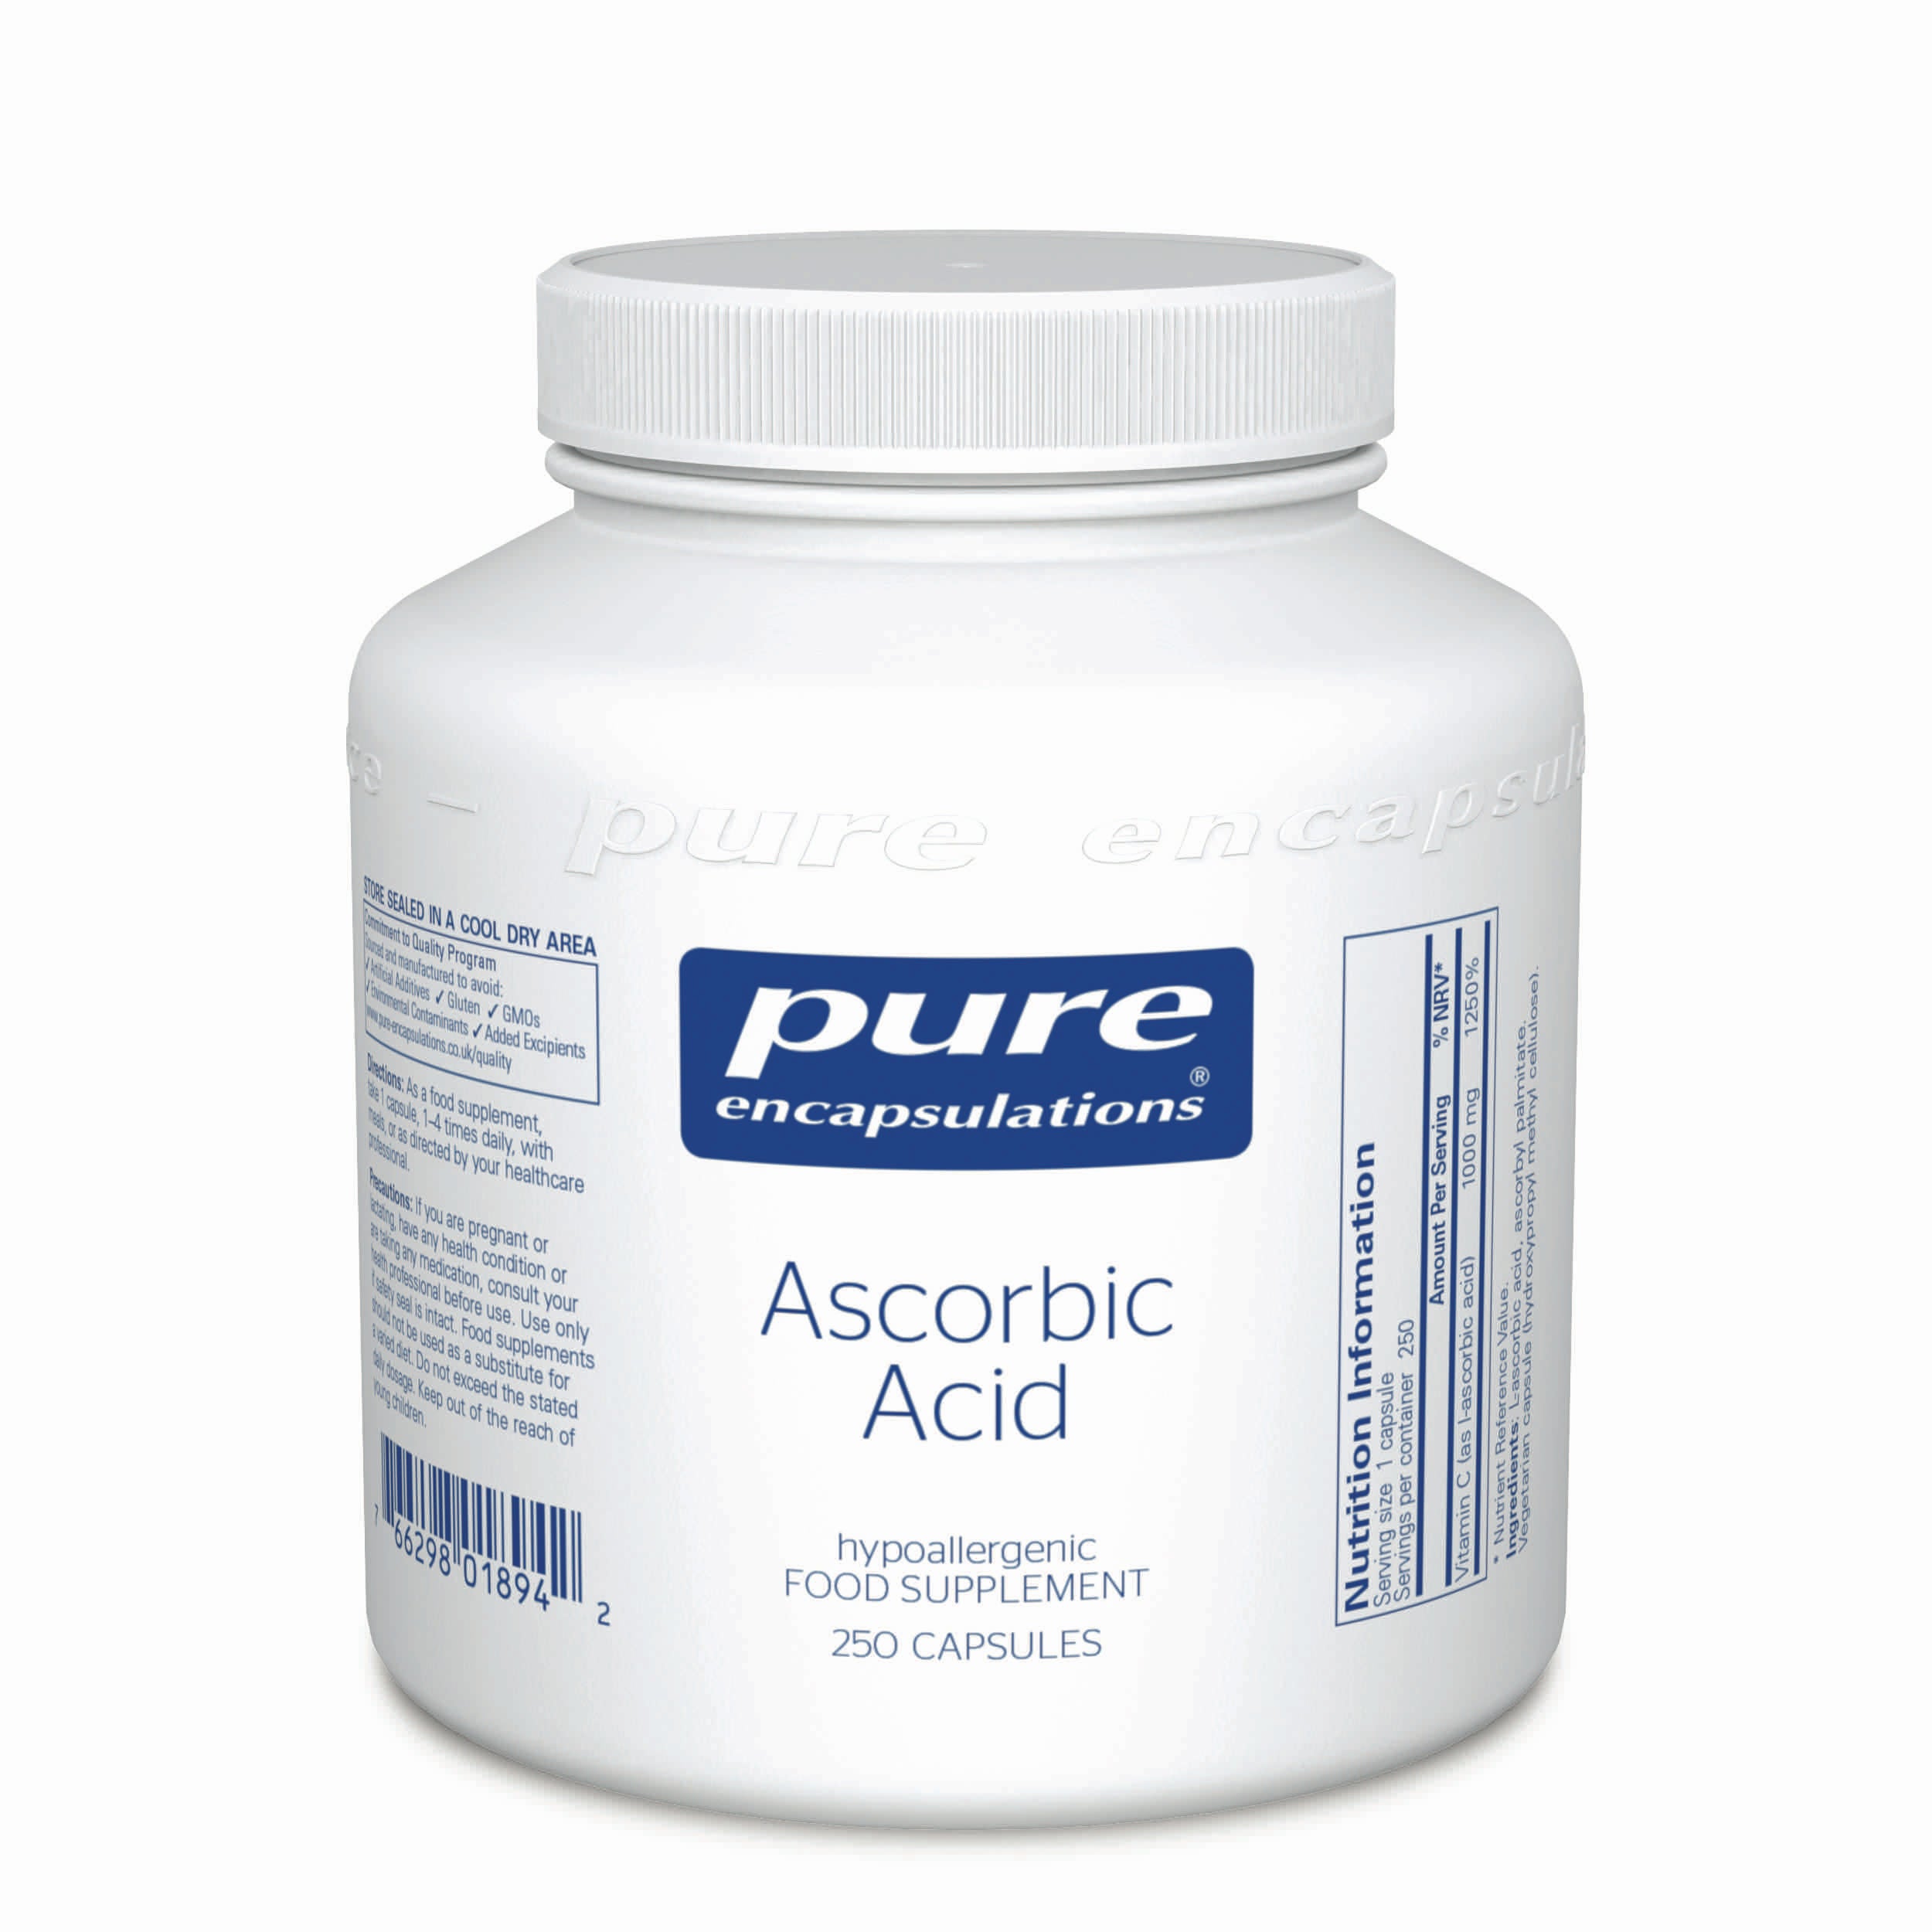 Pure Encapsulations Ascorbic Acid